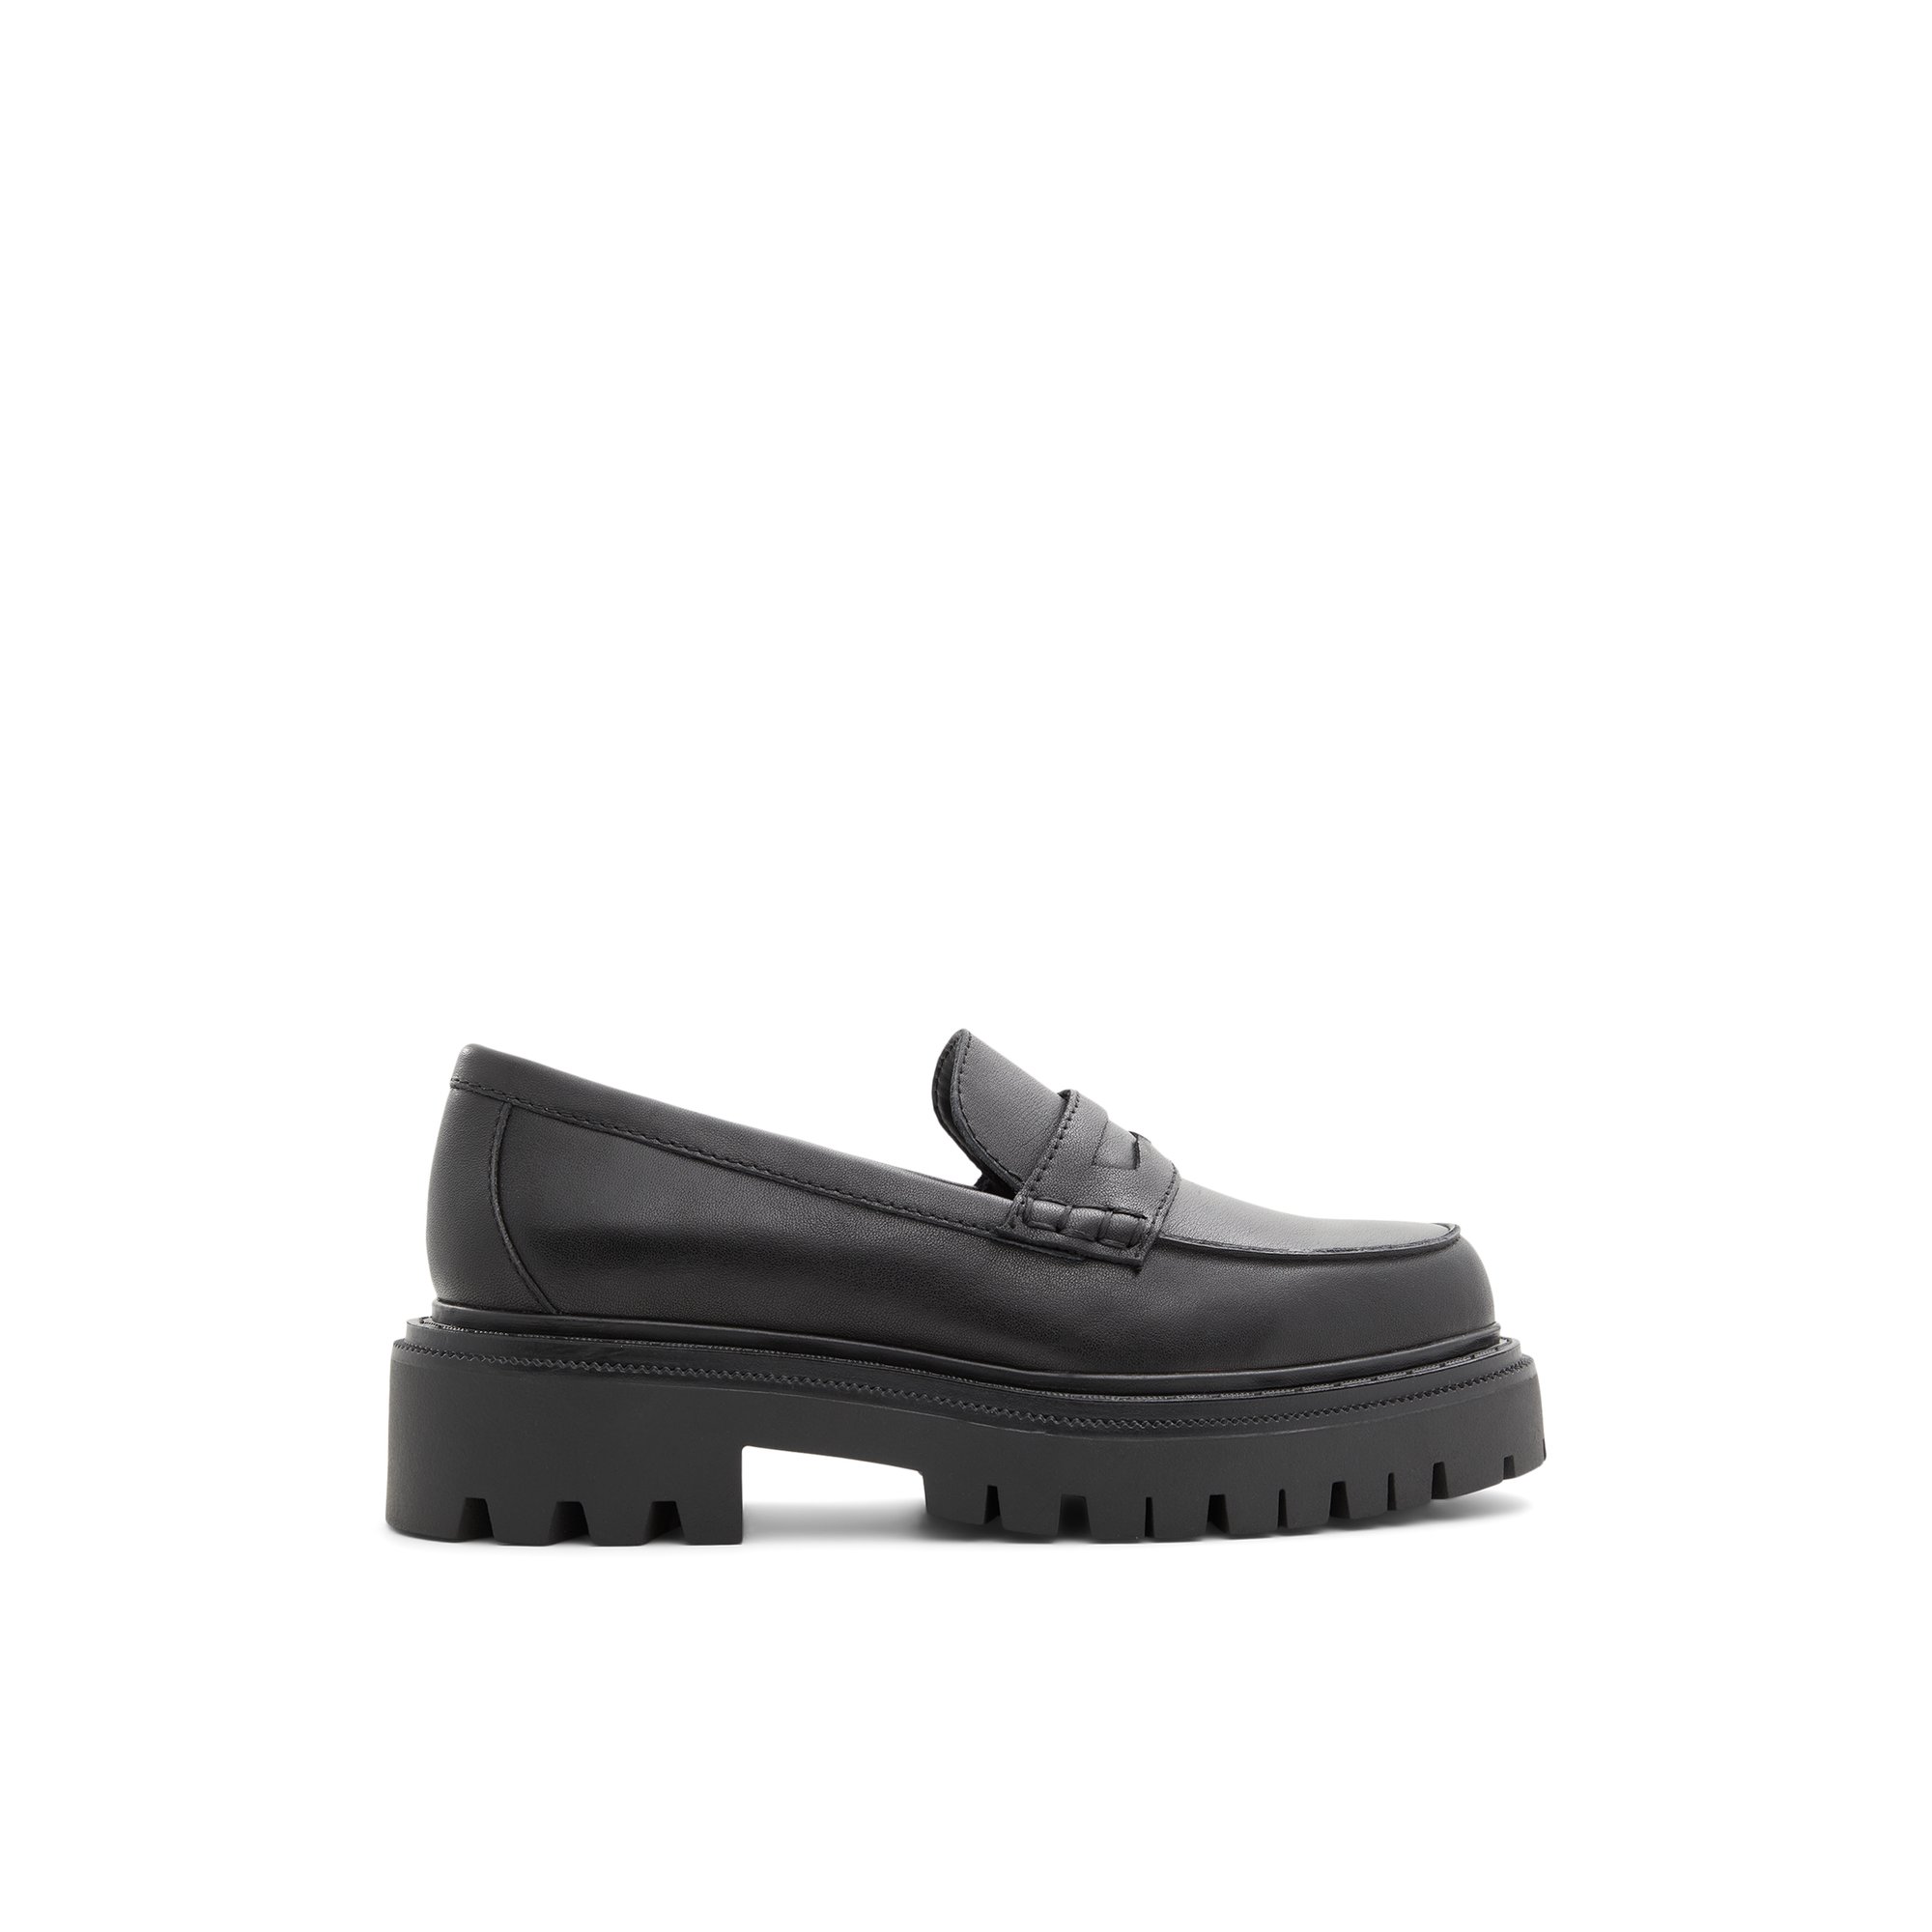 ALDO Bigstrut - Women's Loafers - Black